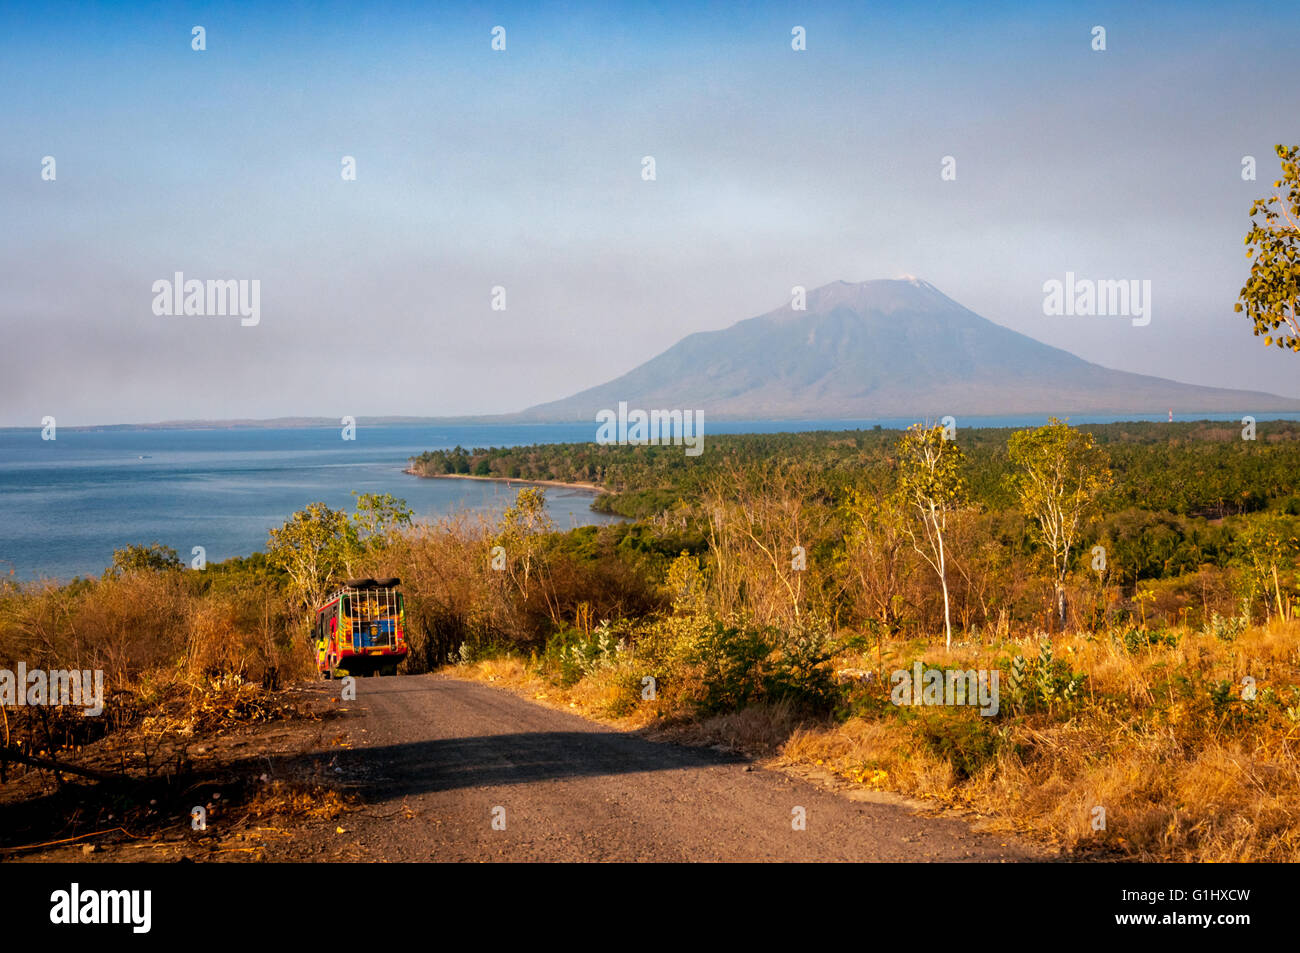 Der Vulkan Lewotolok wird von einer Straße zum Waijarang-Hügel auf der Insel Lembata, Lembata, East Nusa Tenggara, Indonesien, aus gesehen. Stockfoto